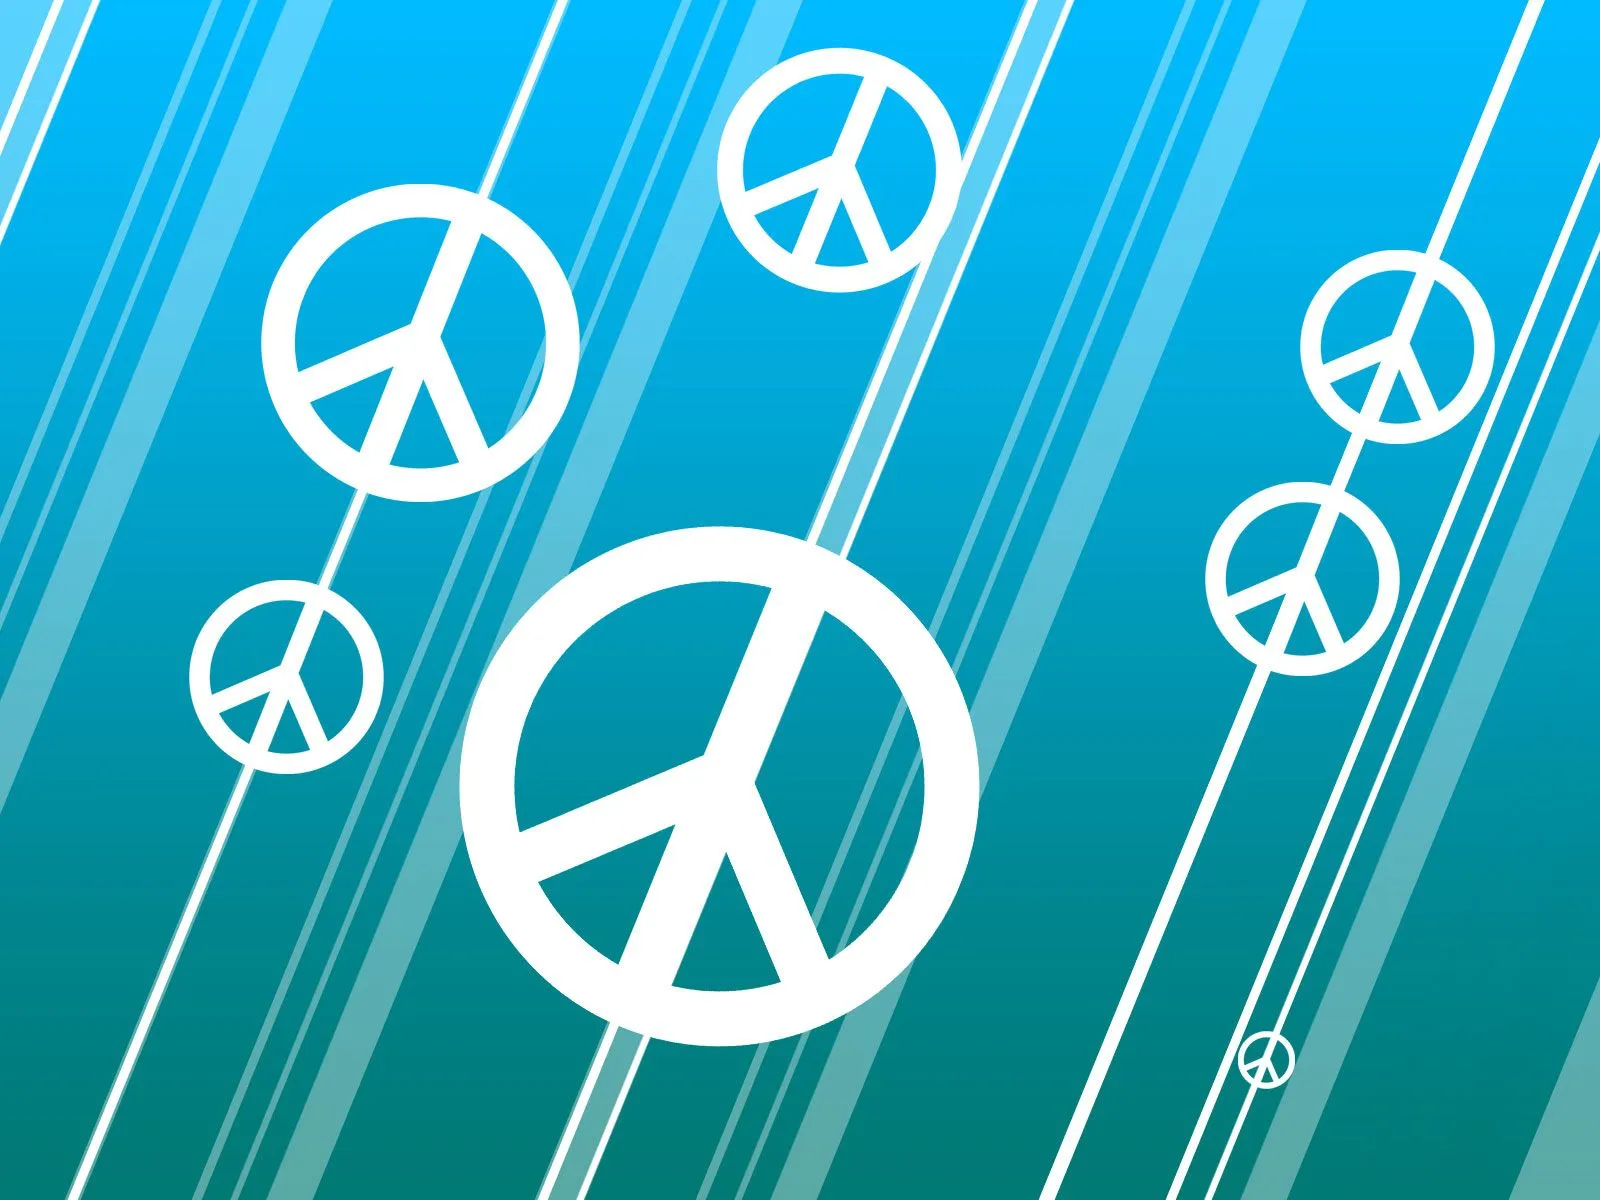 Imagenes y fotos: Simbolos de la Paz, parte 3